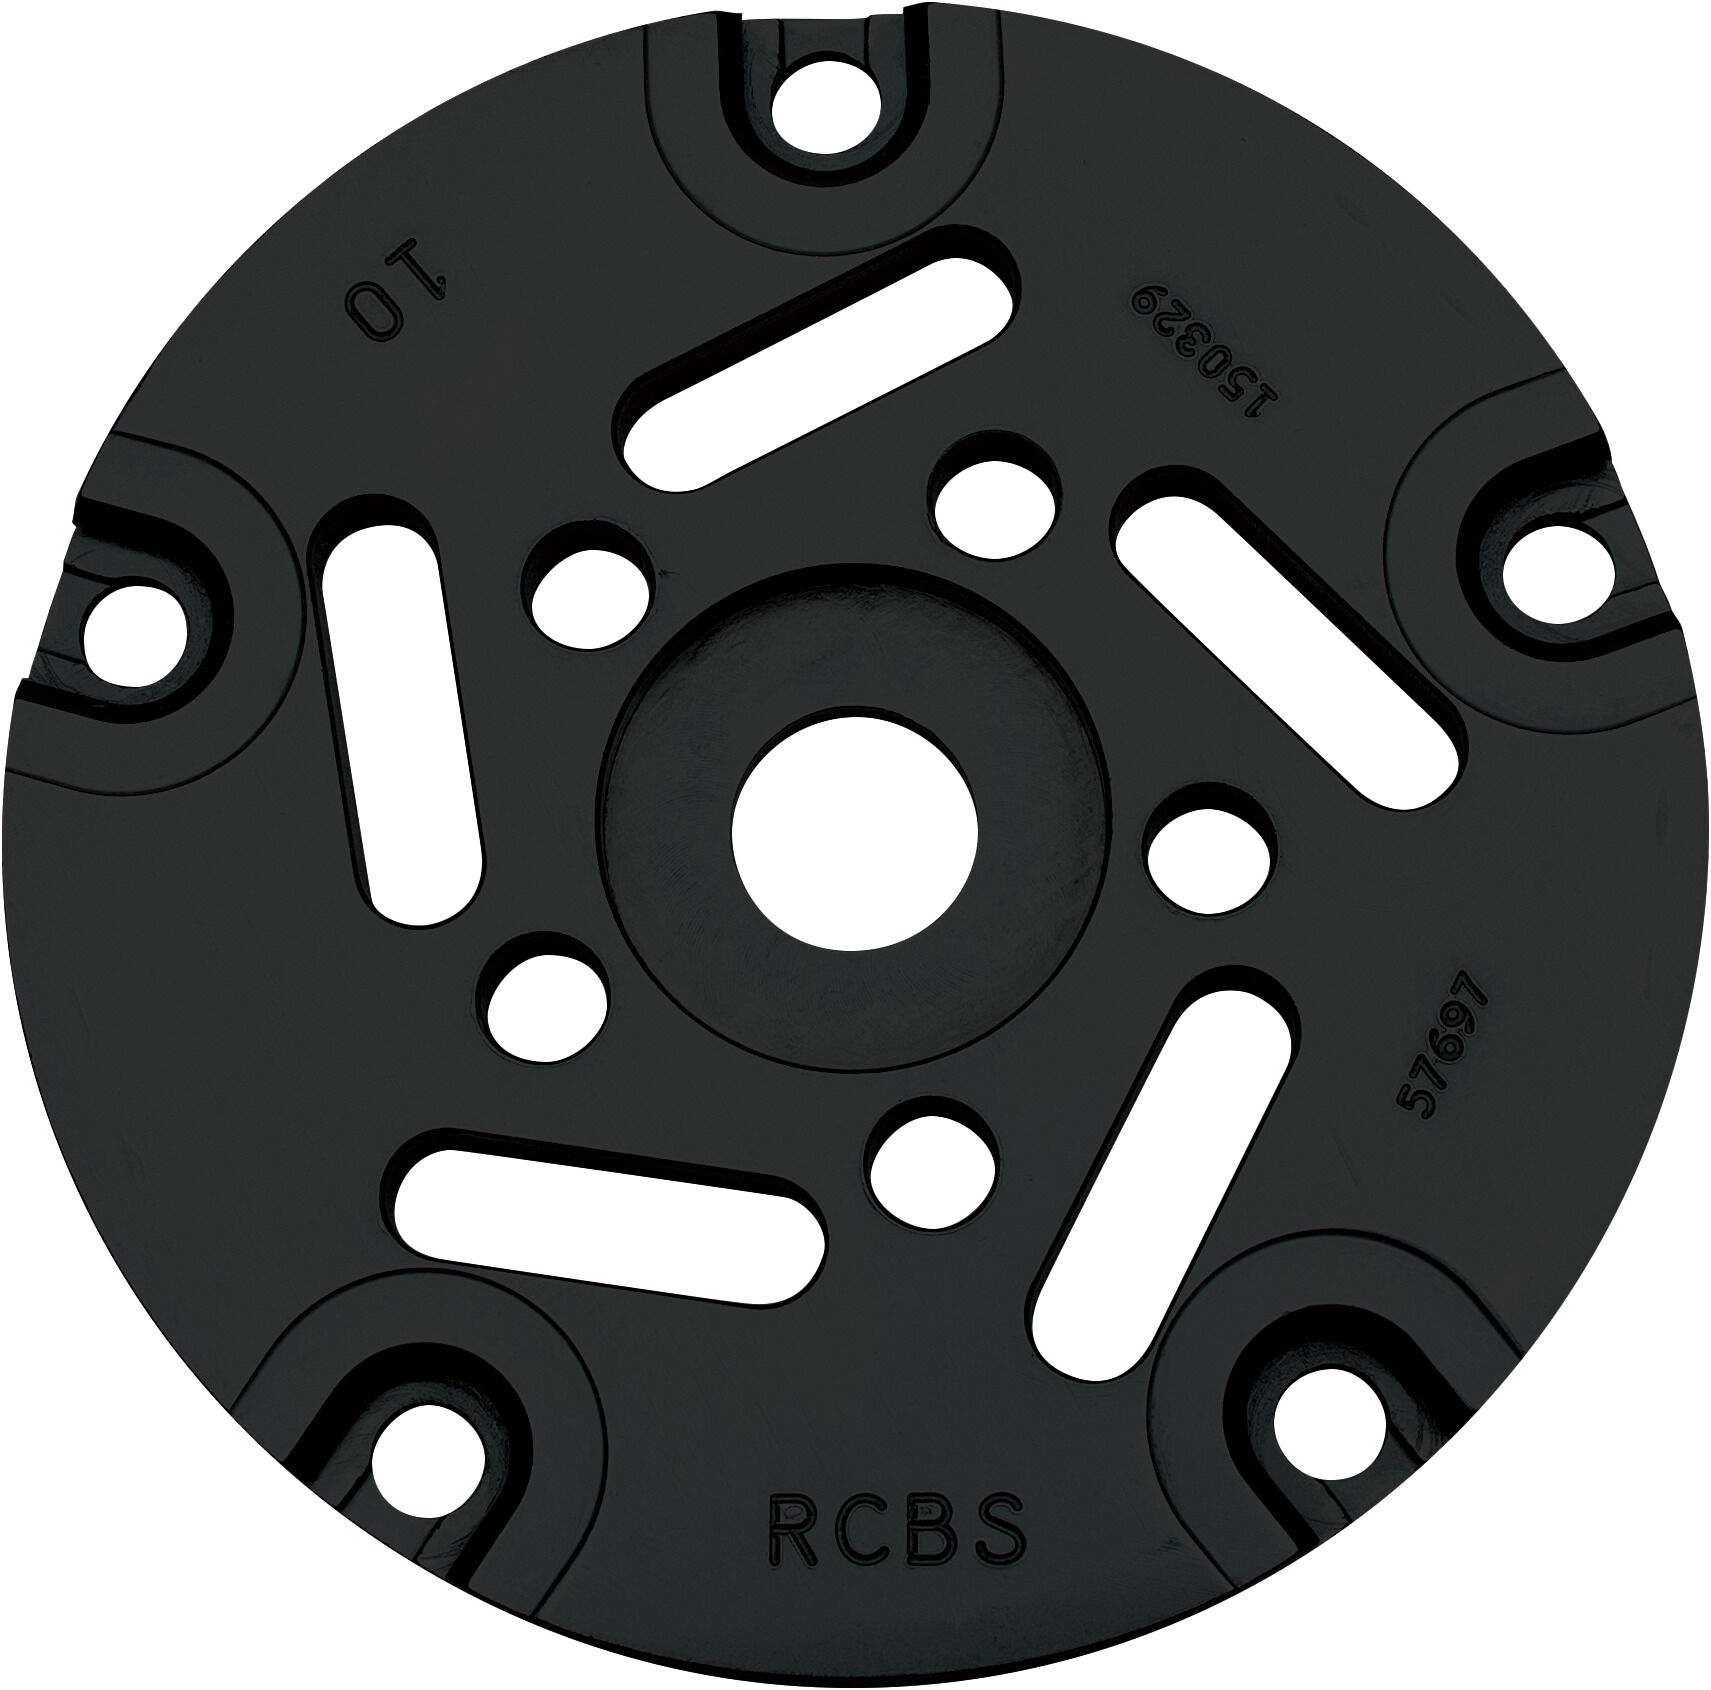 RCBS Reloading Pro Chucker 7 Station Shell Plate Bullet Holder CHOOSE MODEL 